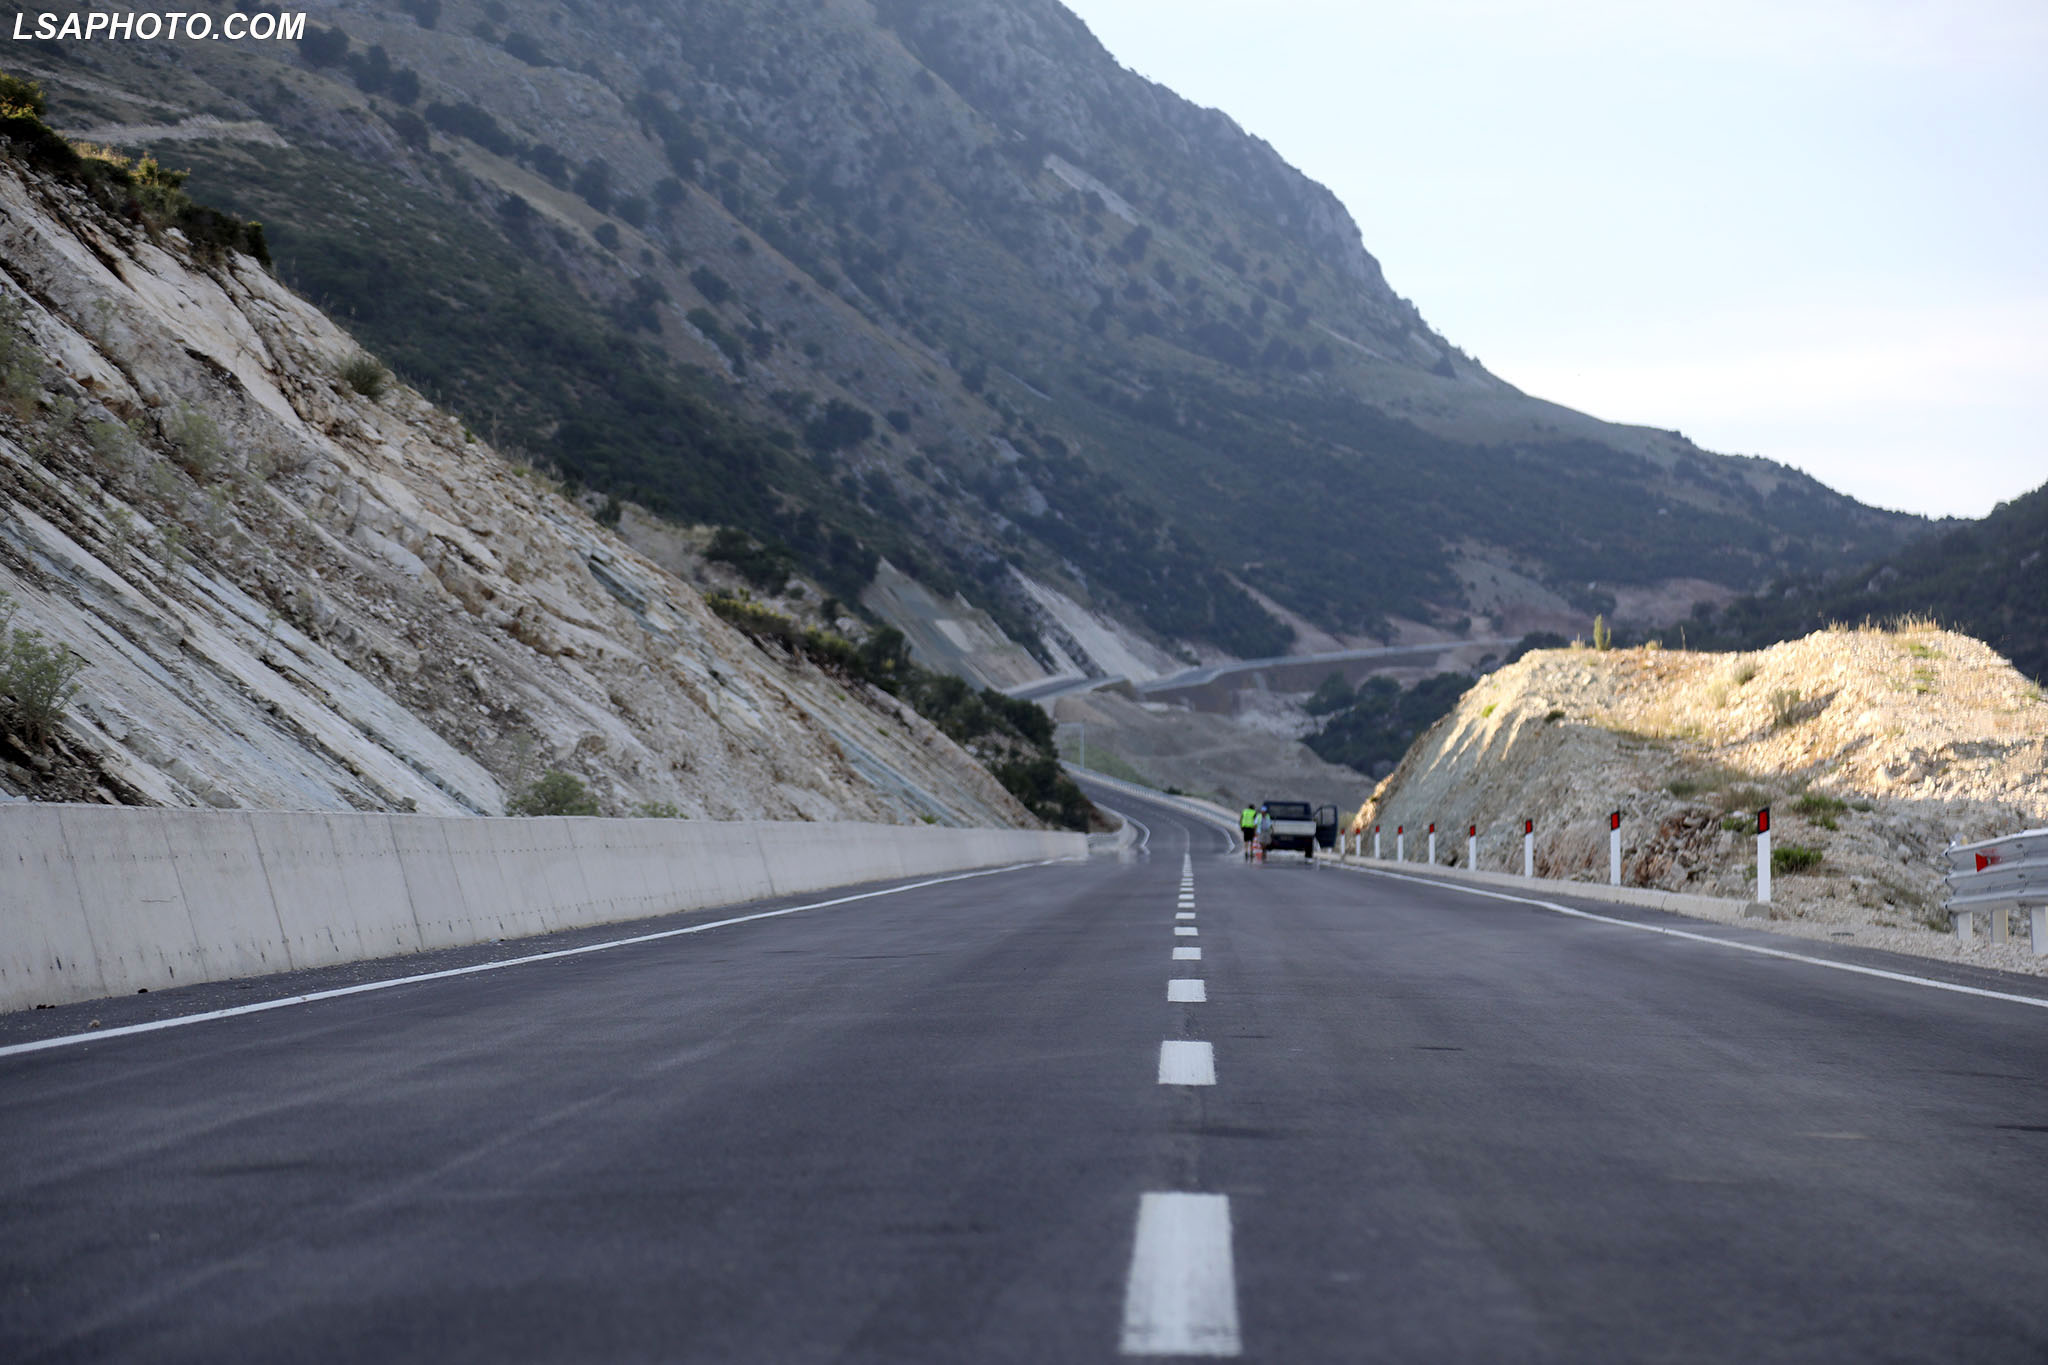 HAPET TUNELI I SKERFICES - Rruga Kardhiq Delvine, e fotografuar me rastin e ceremonise se hapjes se tunelit te Skerfices. Me hapjen e tunelit dhe rrjedhimisht te rruges Kardhiq-Delvine, rruga nga Tirana në Sarande shkurtohet me 45 minuta. Gjatesia e tunelit eshte  1316 metra dhe e gjithe rruga prej 34 kilometrash konsiderohet si nje nyje strategjike per ekonomine dhe turizmin. /r/n/r/nSKERFICA TUNNEL OPENS - Kardhiq Delvine Street, photographed on the occasion of the opening ceremony of the Skerfica tunnel. With the opening of the tunnel and consequently of the Kardhiq-Delvine road, the road from Tirana to Sarande is shortened by 45 minutes. The length of the tunnel is 1316 meters and the whole road of 34 kilometers is considered a strategic node for the economy and tourism.